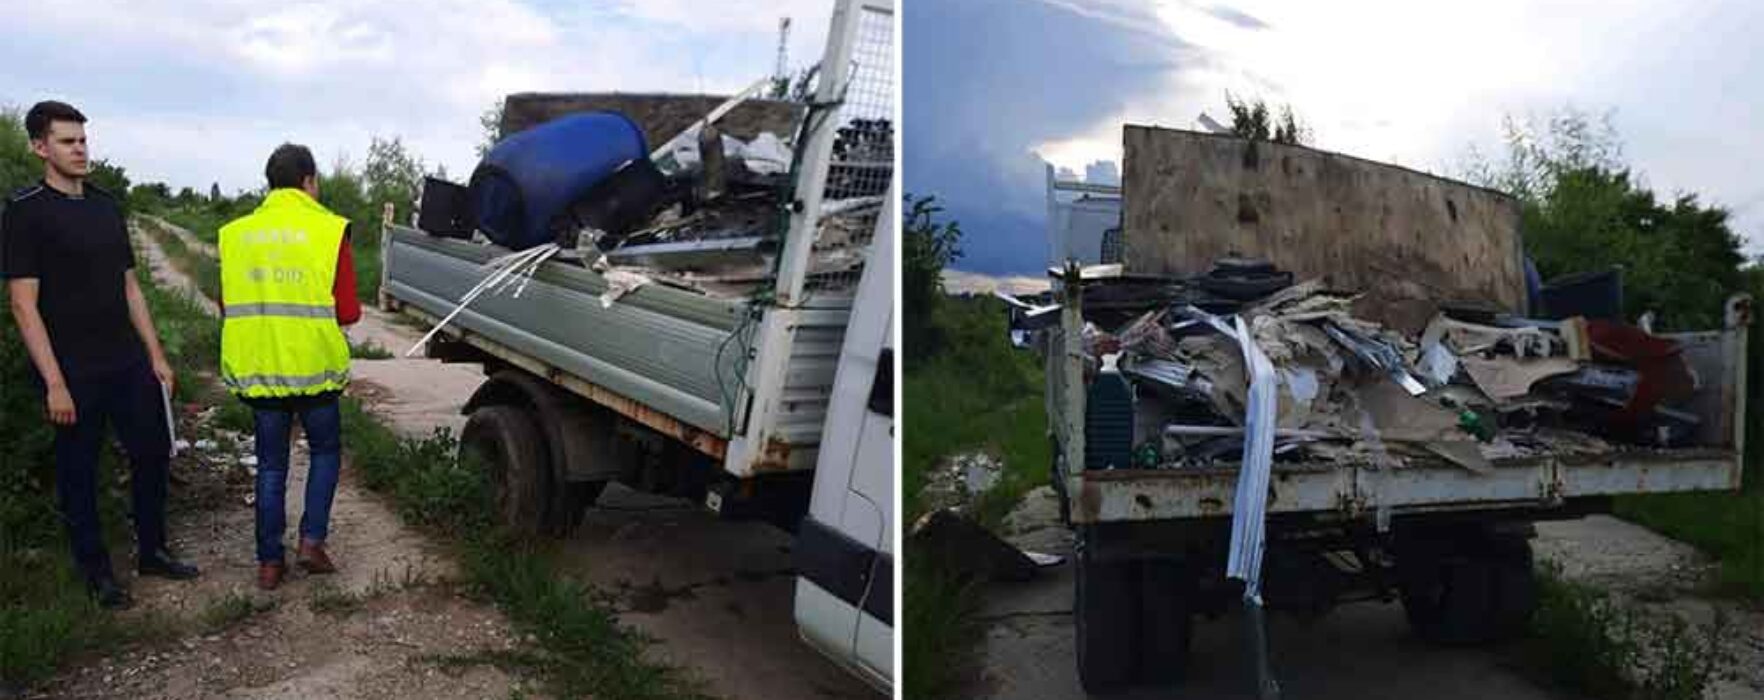 Dâmboviţa: Autoutilitară confiscată de Garda de Mediu; transporta ilegal deşeuri pe care intenţiona să le arunce pe un teren viran